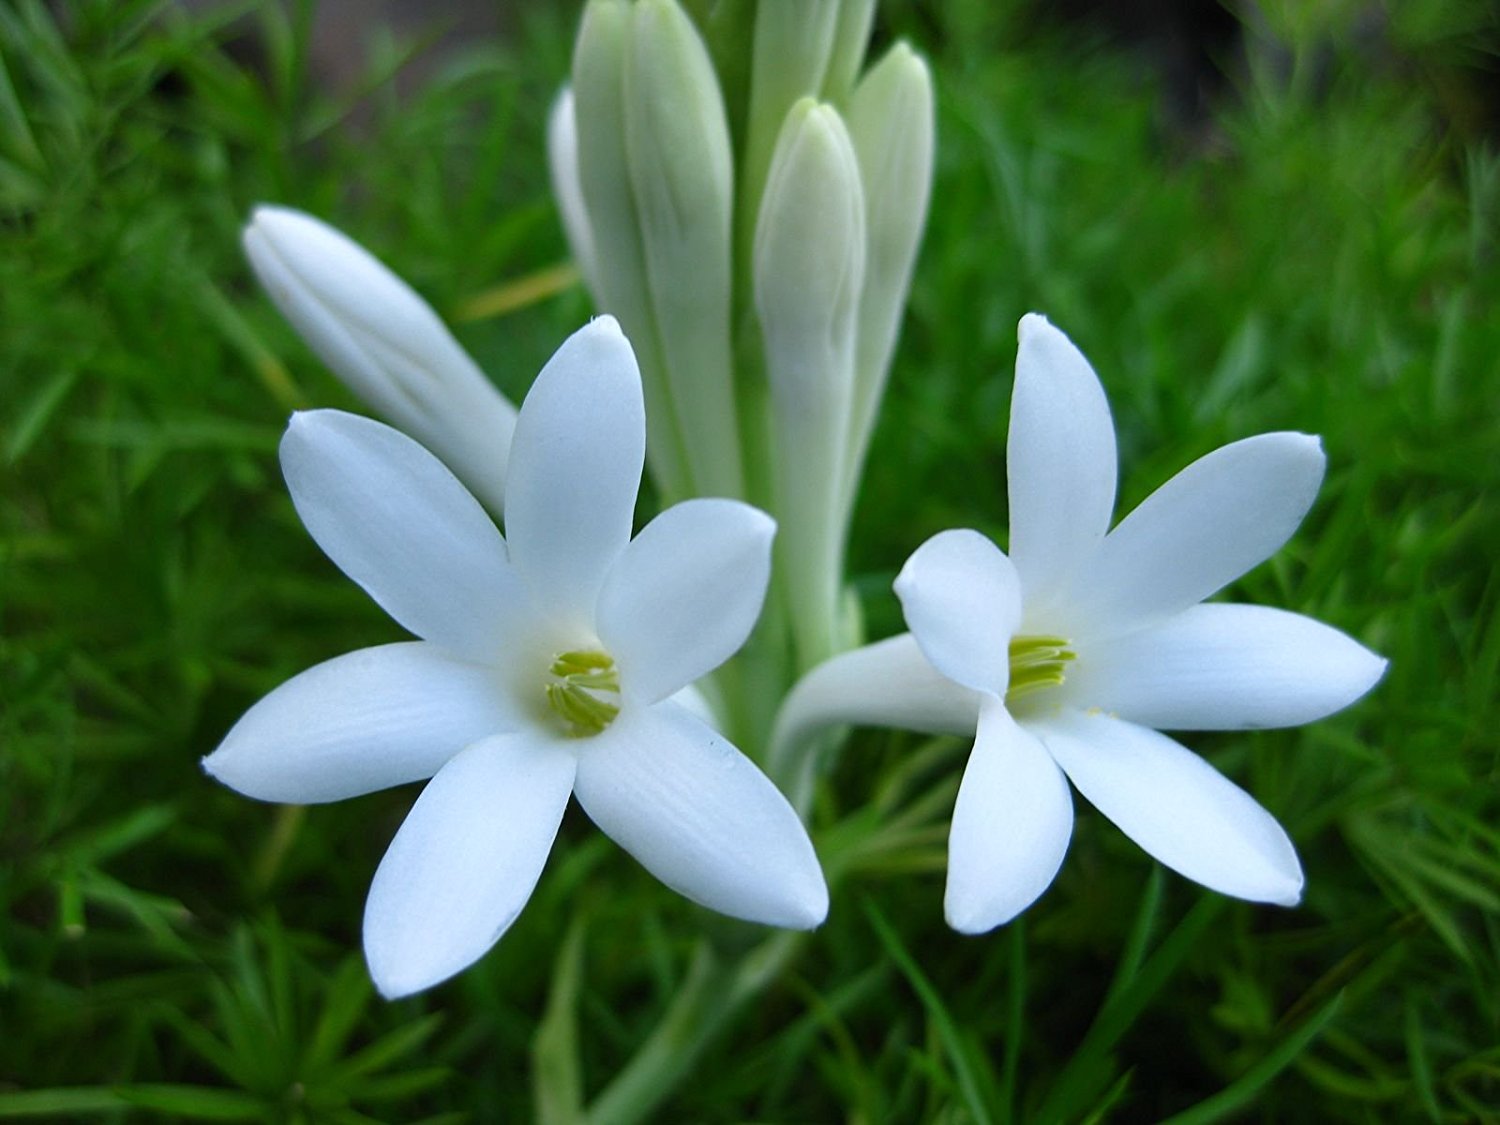 عکس گل مریم سفید برای پروفایل